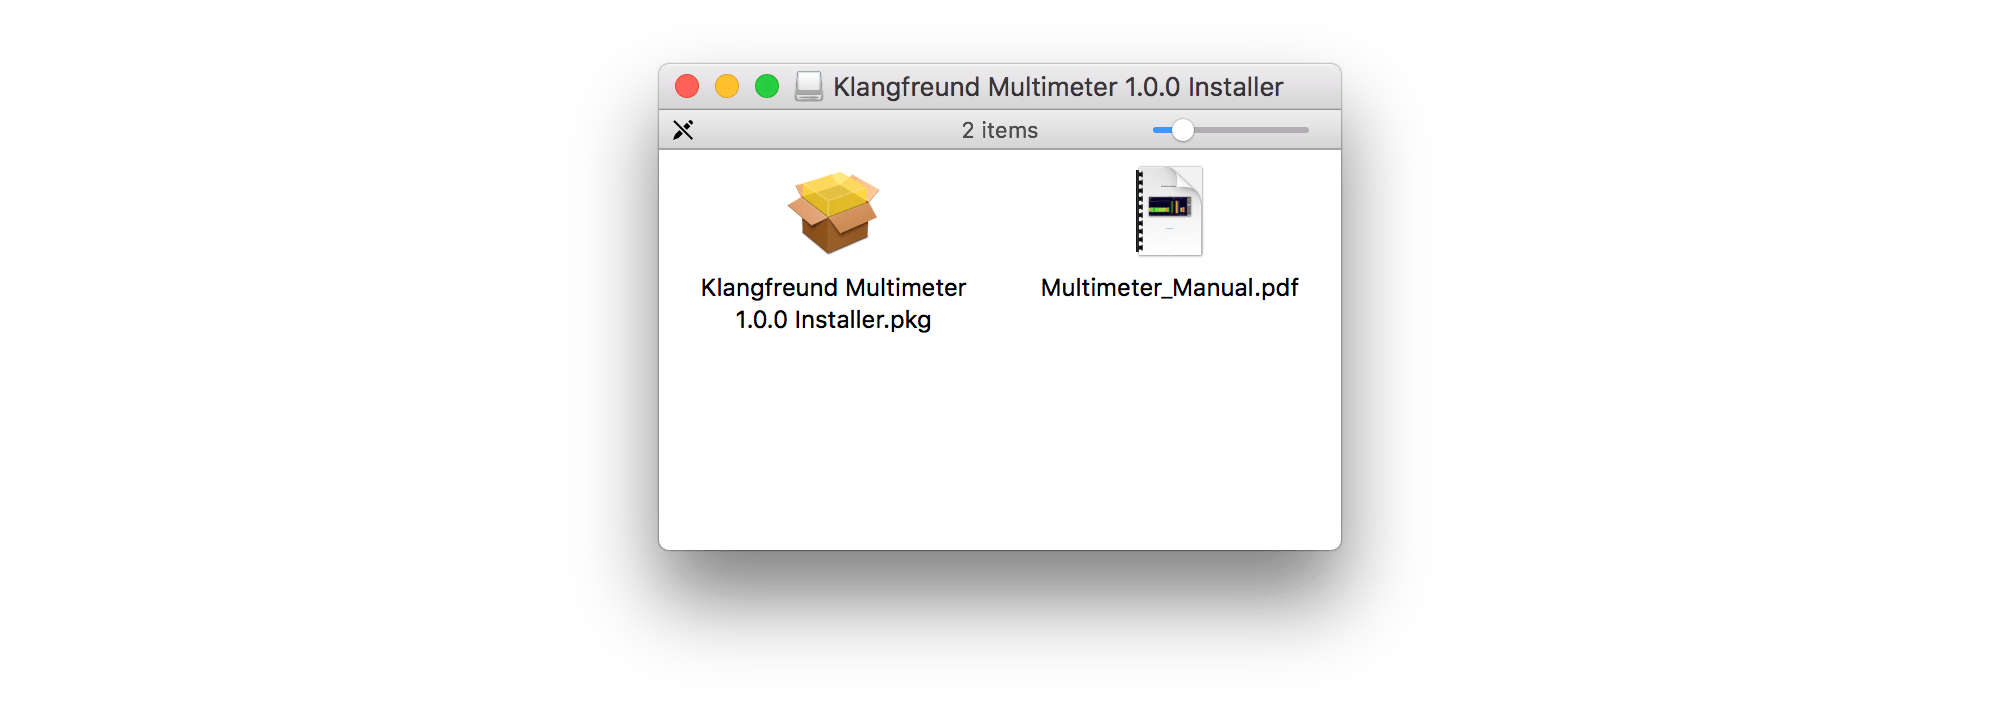 macOS installer